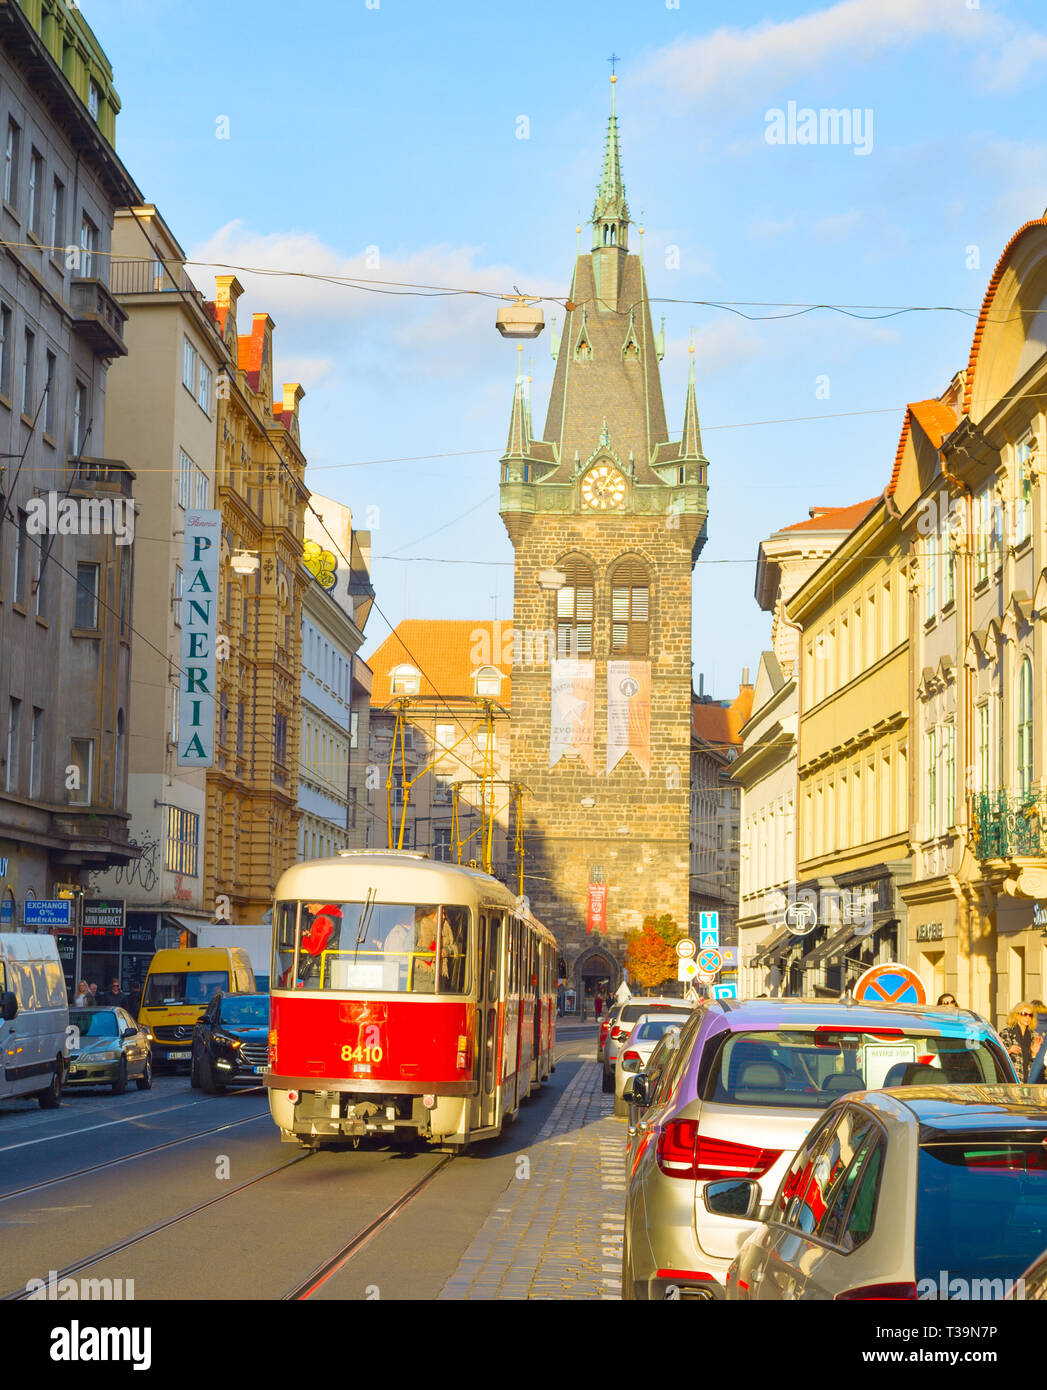 PRAGUE, RÉPUBLIQUE TCHÈQUE - le 14 novembre 2018 : Sunshine dans la vieille ville de Prague, rue tramway rouge et la circulation automobile, Henri Bell Tower en arrière-plan Banque D'Images